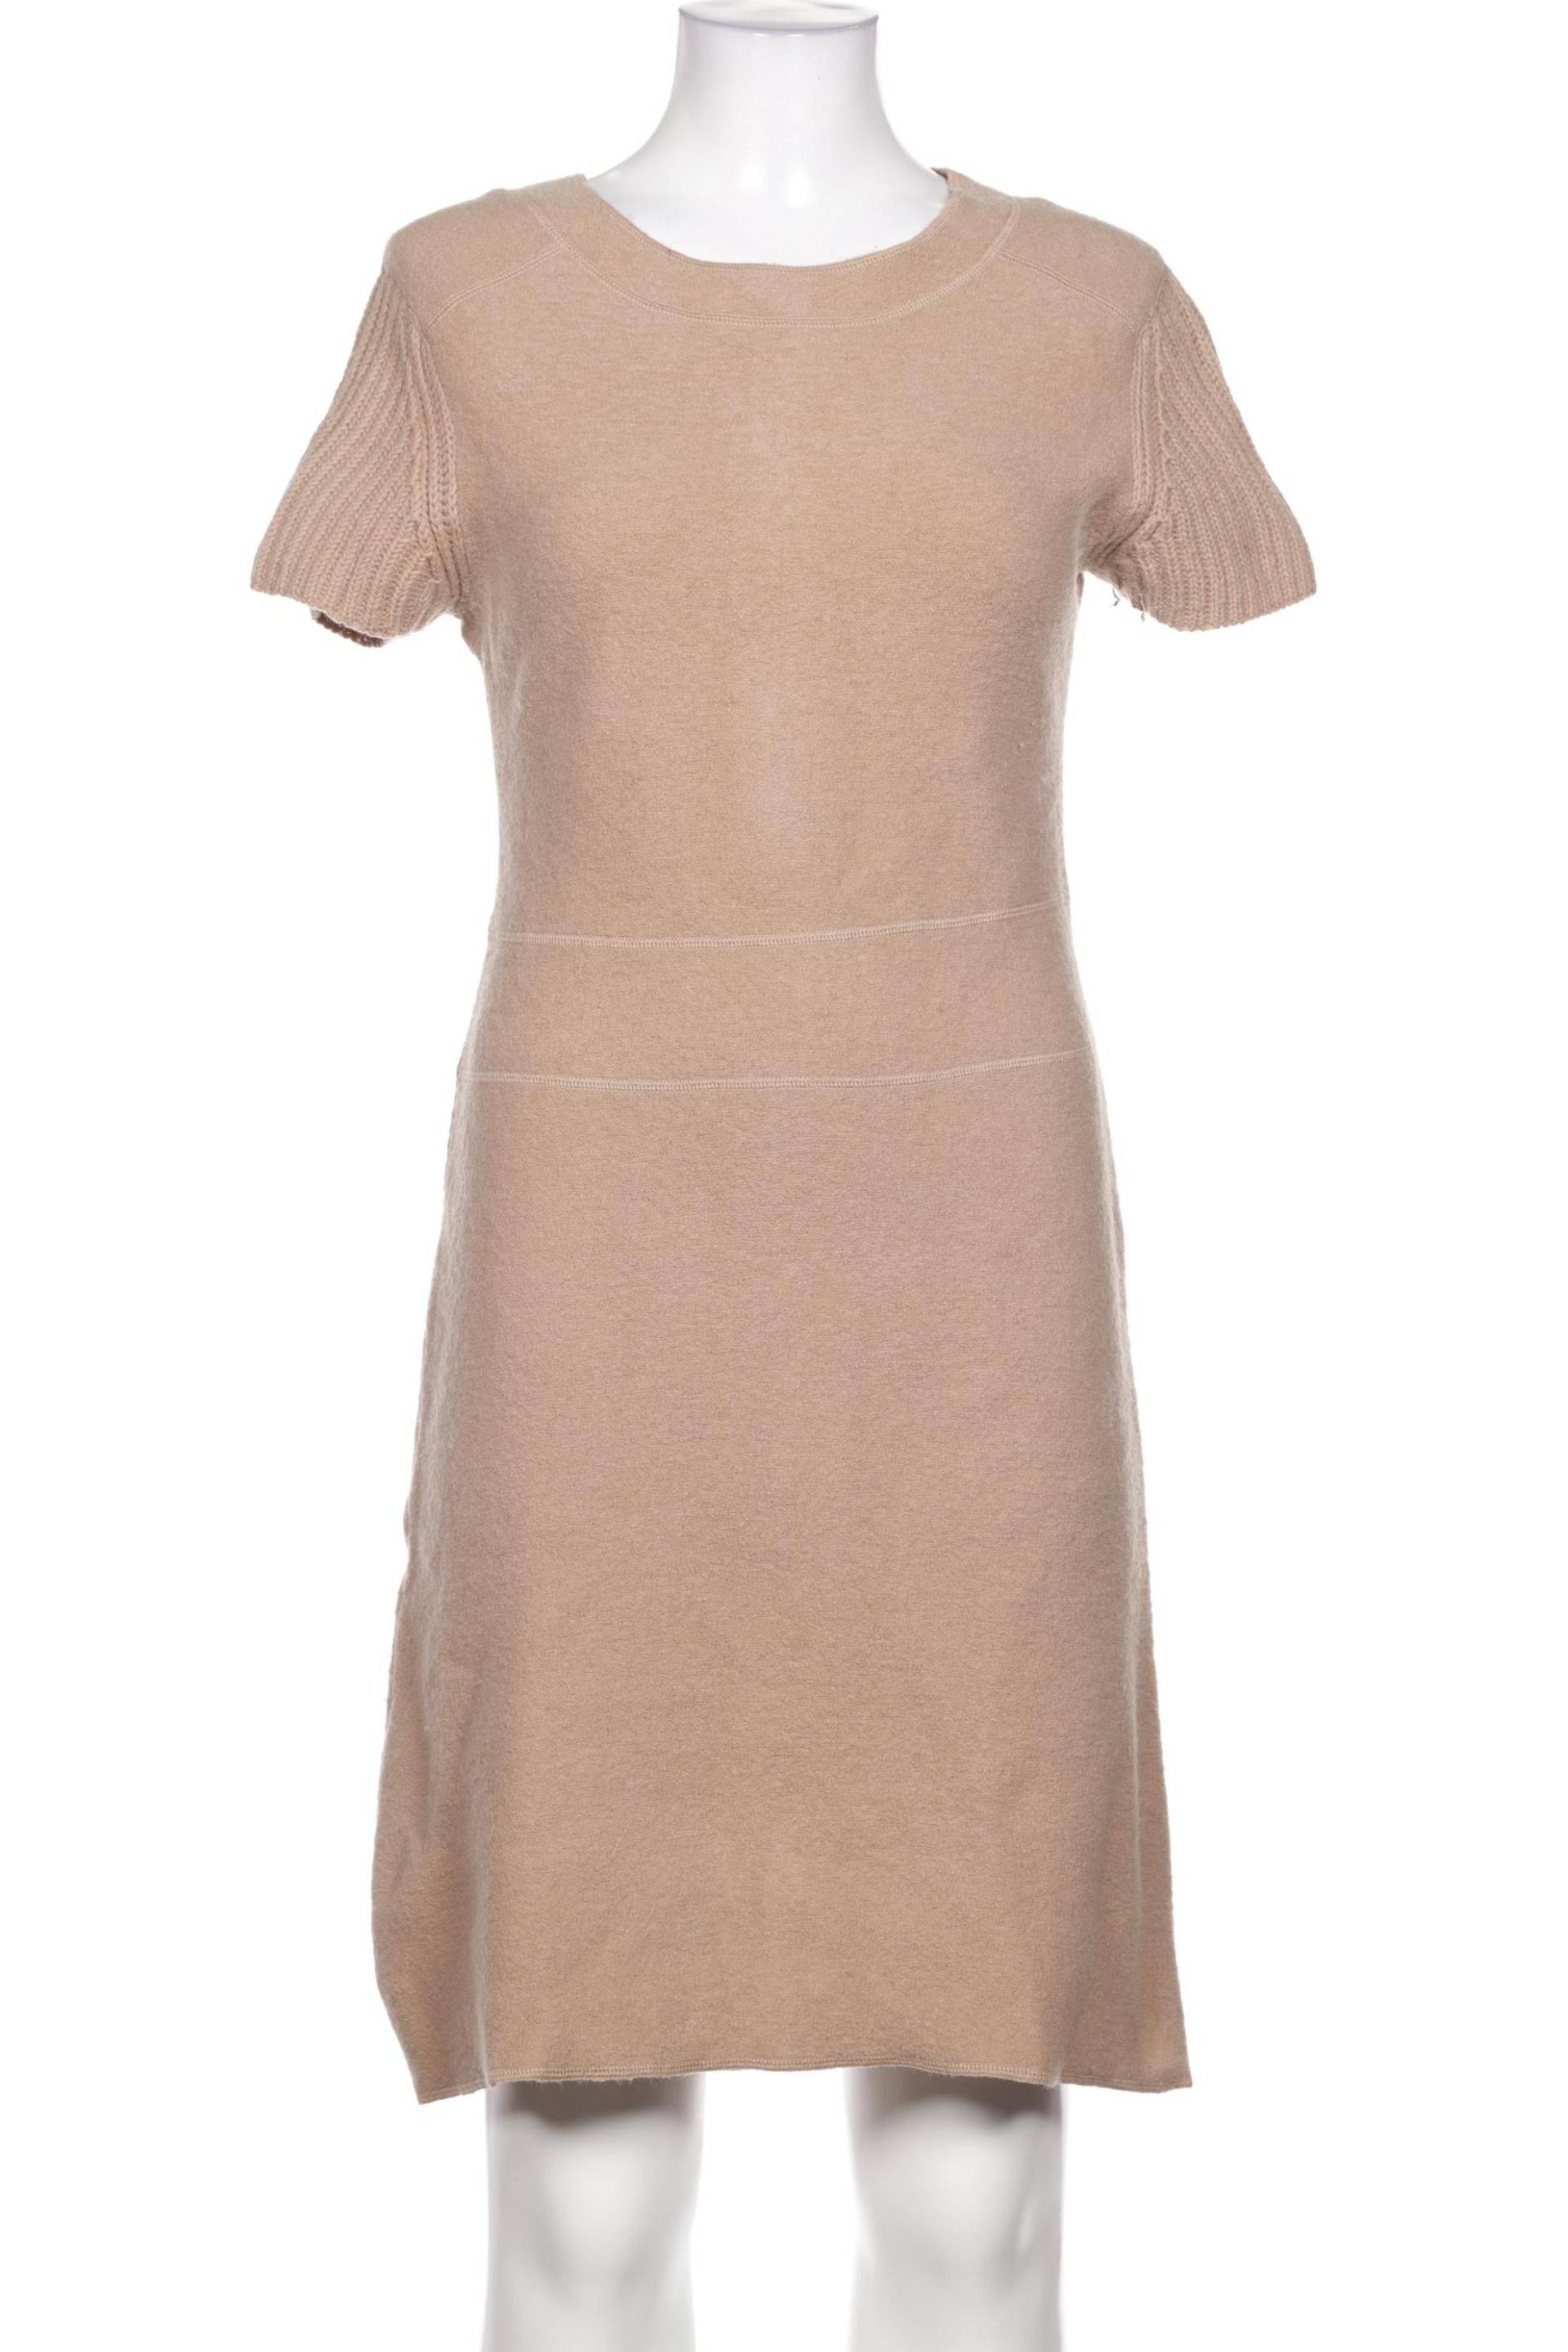 Strenesse Damen Kleid, beige, Gr. 38 von Strenesse